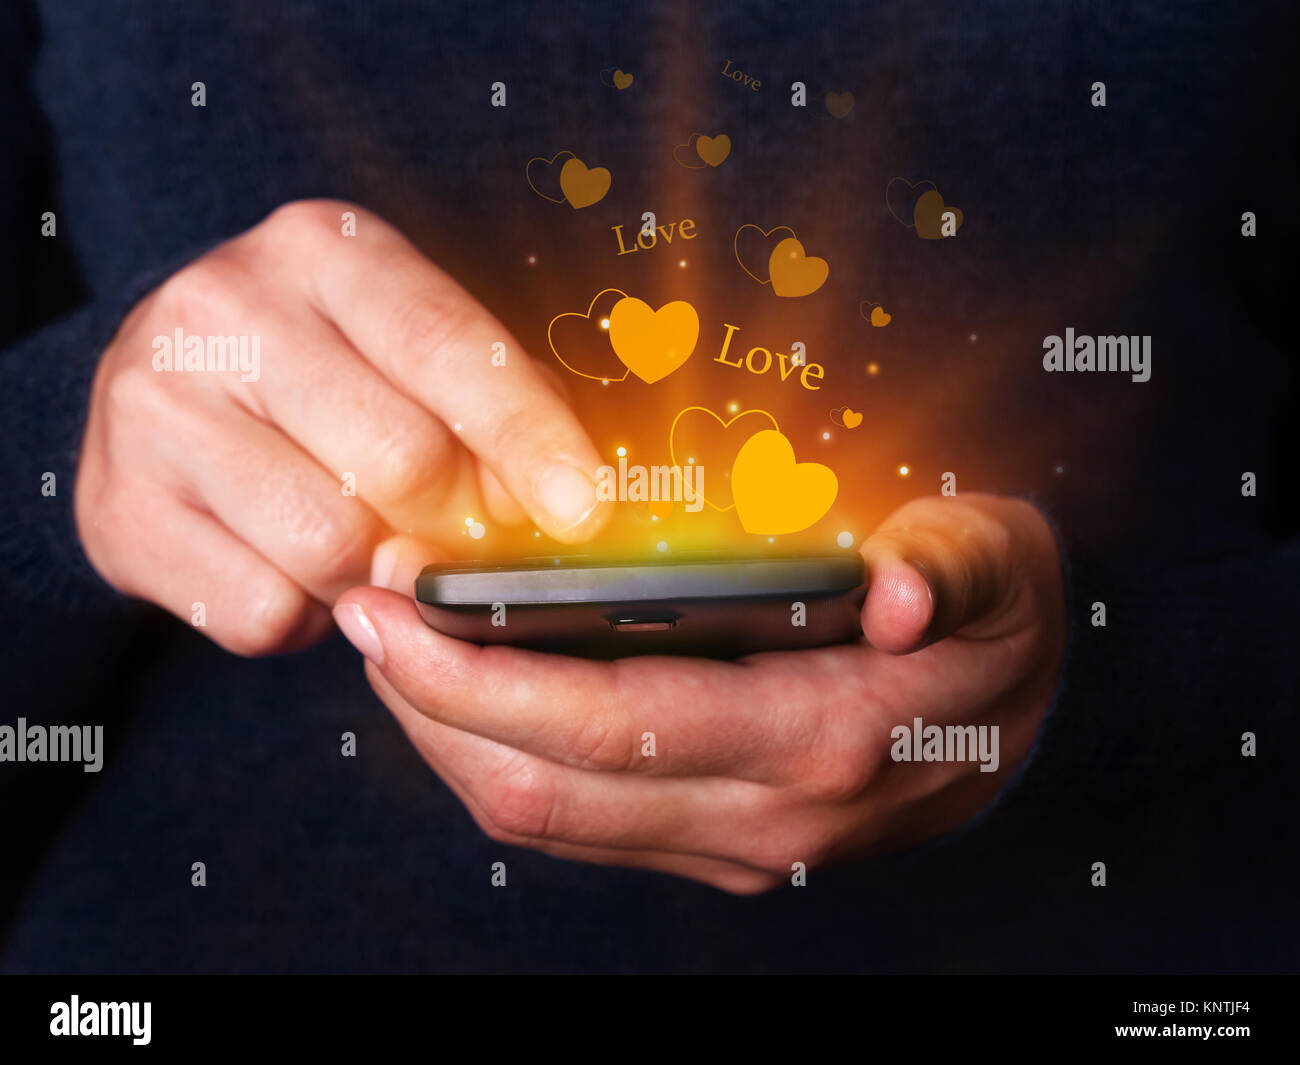 Mujer manos sosteniendo y usando el smartphone o teléfono celular móvil para enviar mensajes SMS o mensajería para San Valentín amor pasión online dating Valentine romance Foto de stock